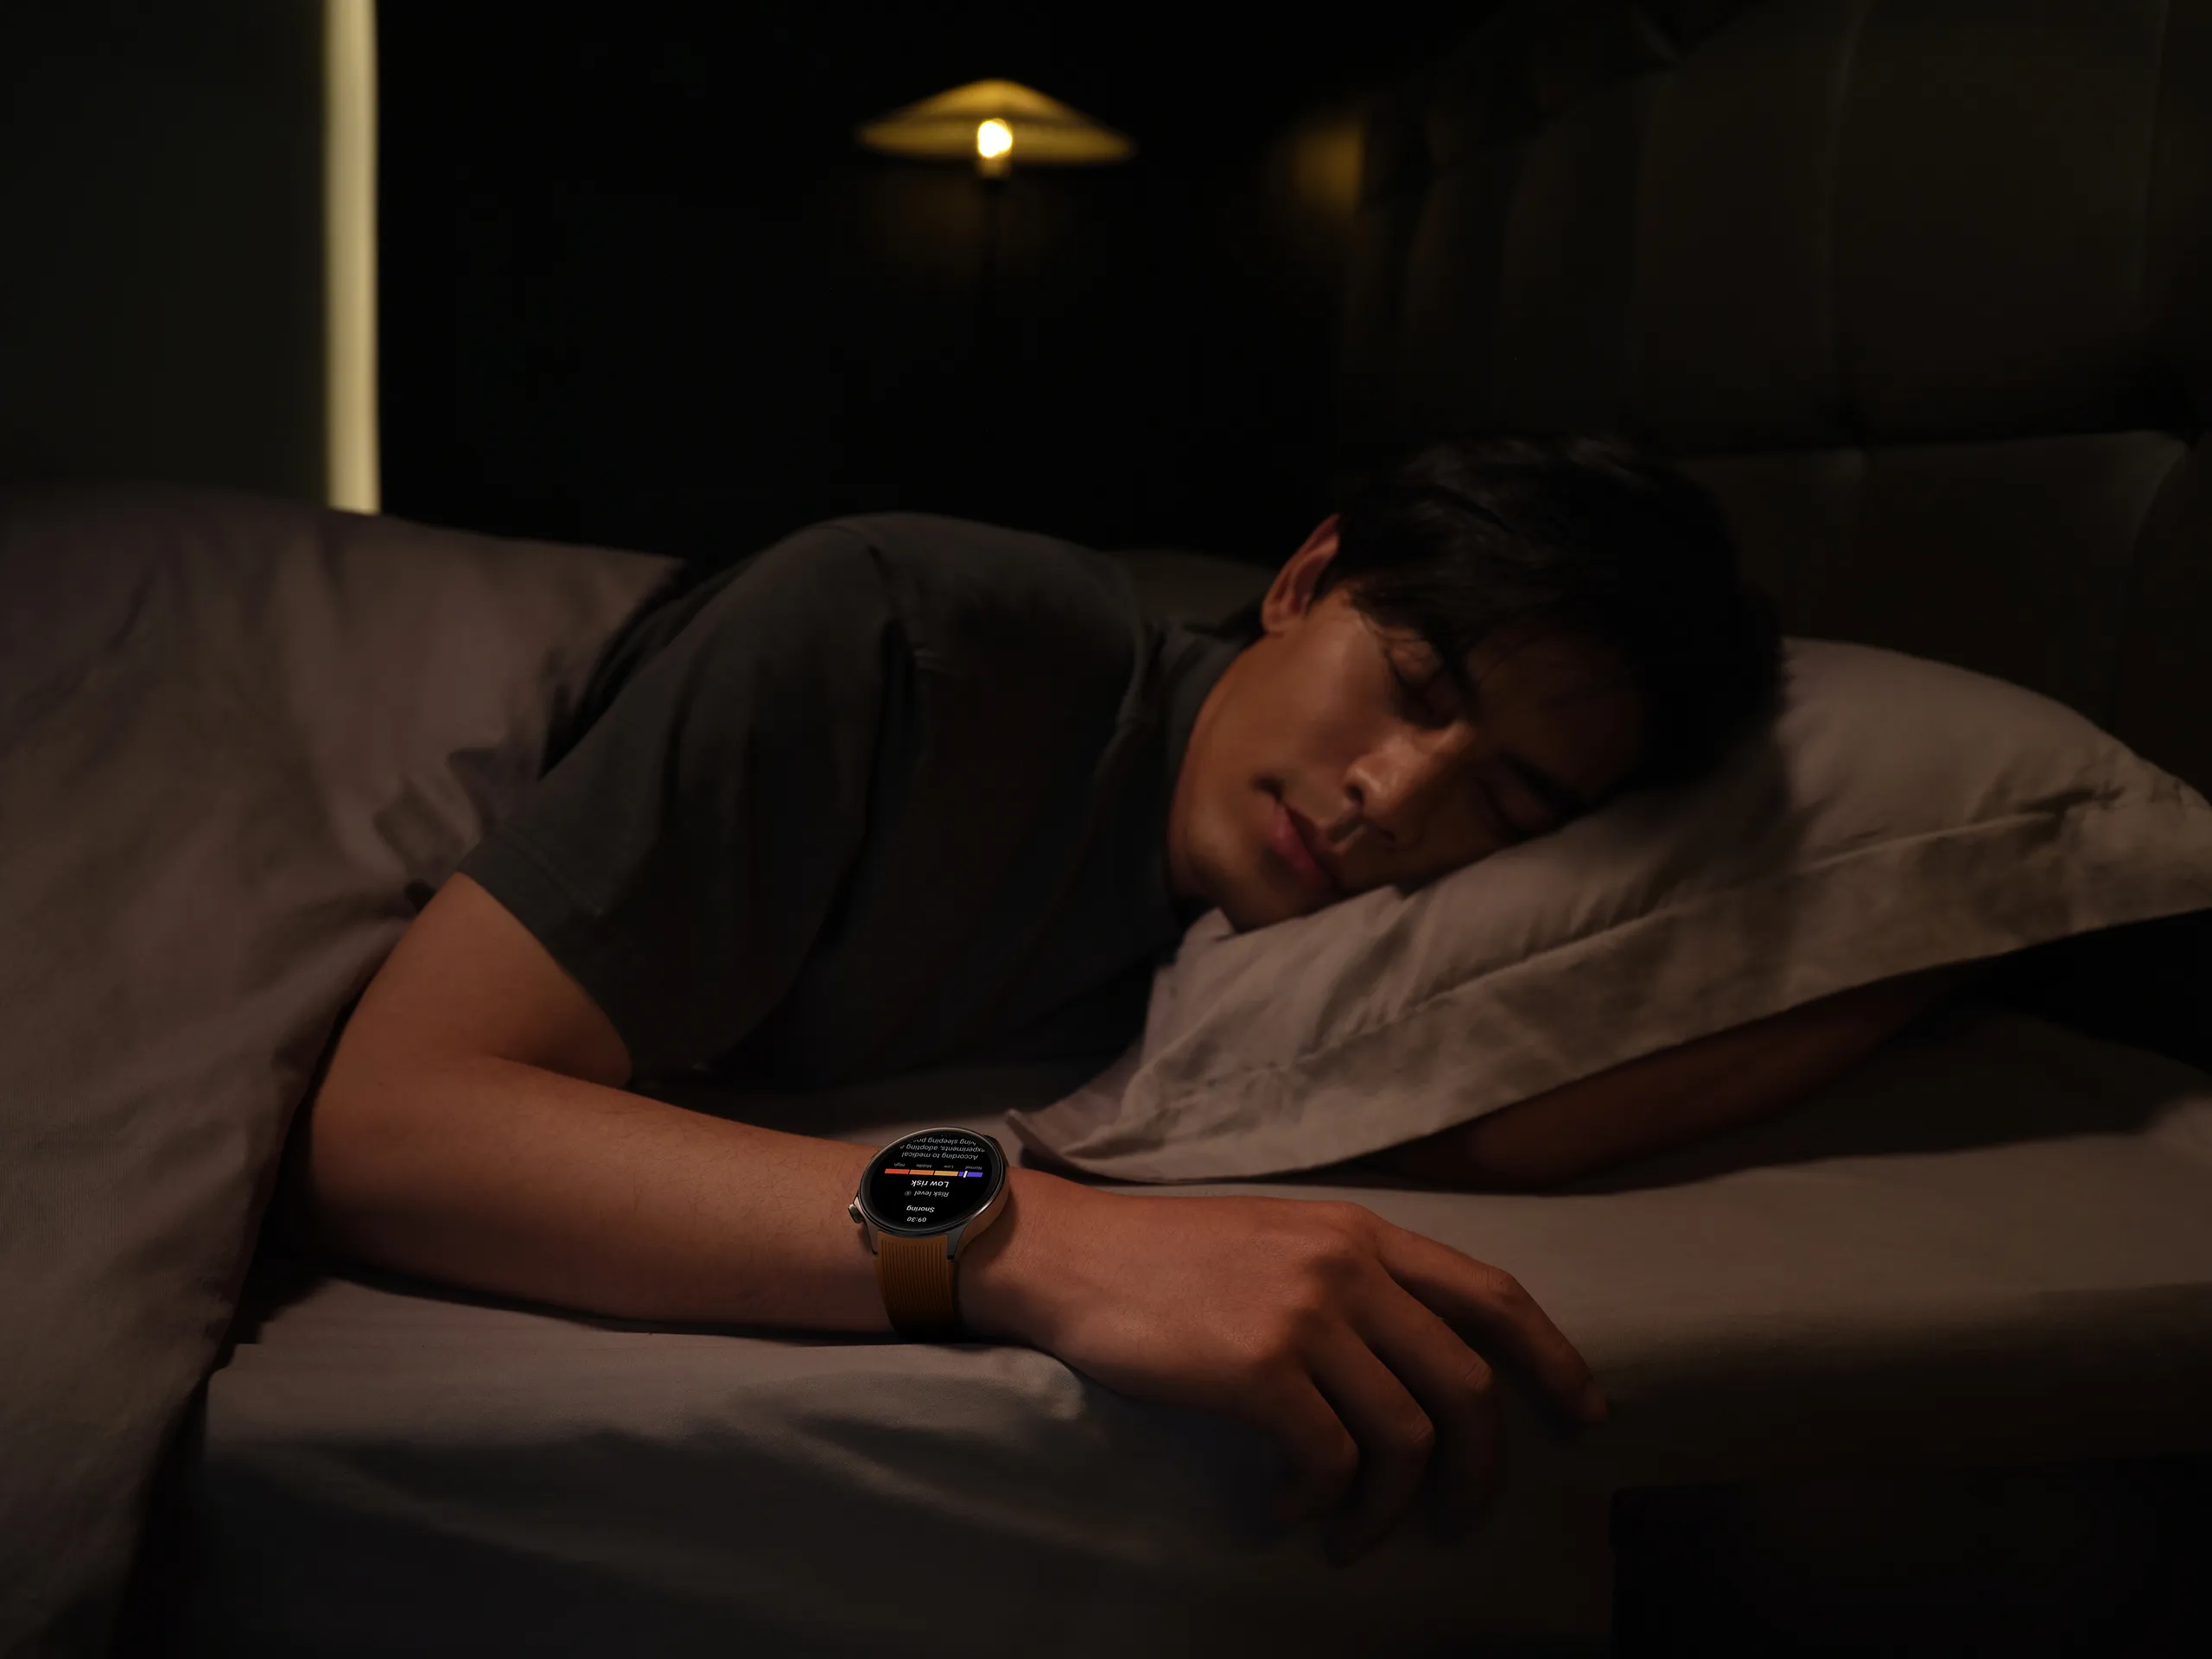 Đồng hồ OPPO Watch X ra mắt vời thời lượng pin lên đến 100 giờ cùng loạt tính năng thể thao chuyên nghiệp